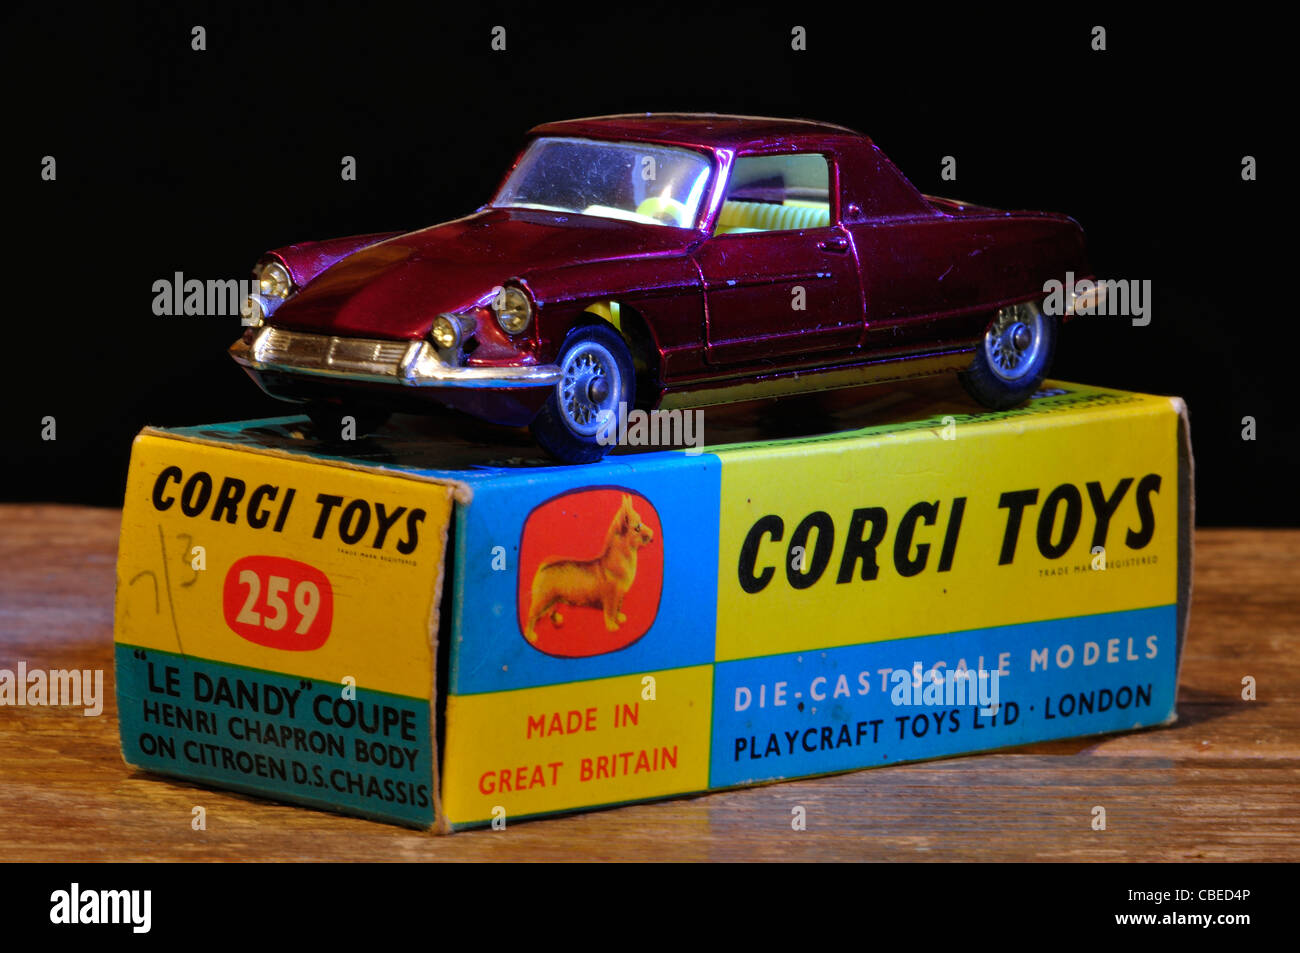 https://c8.alamy.com/comp/CBED4P/a-vintage-corgi-toy-car-uk-CBED4P.jpg